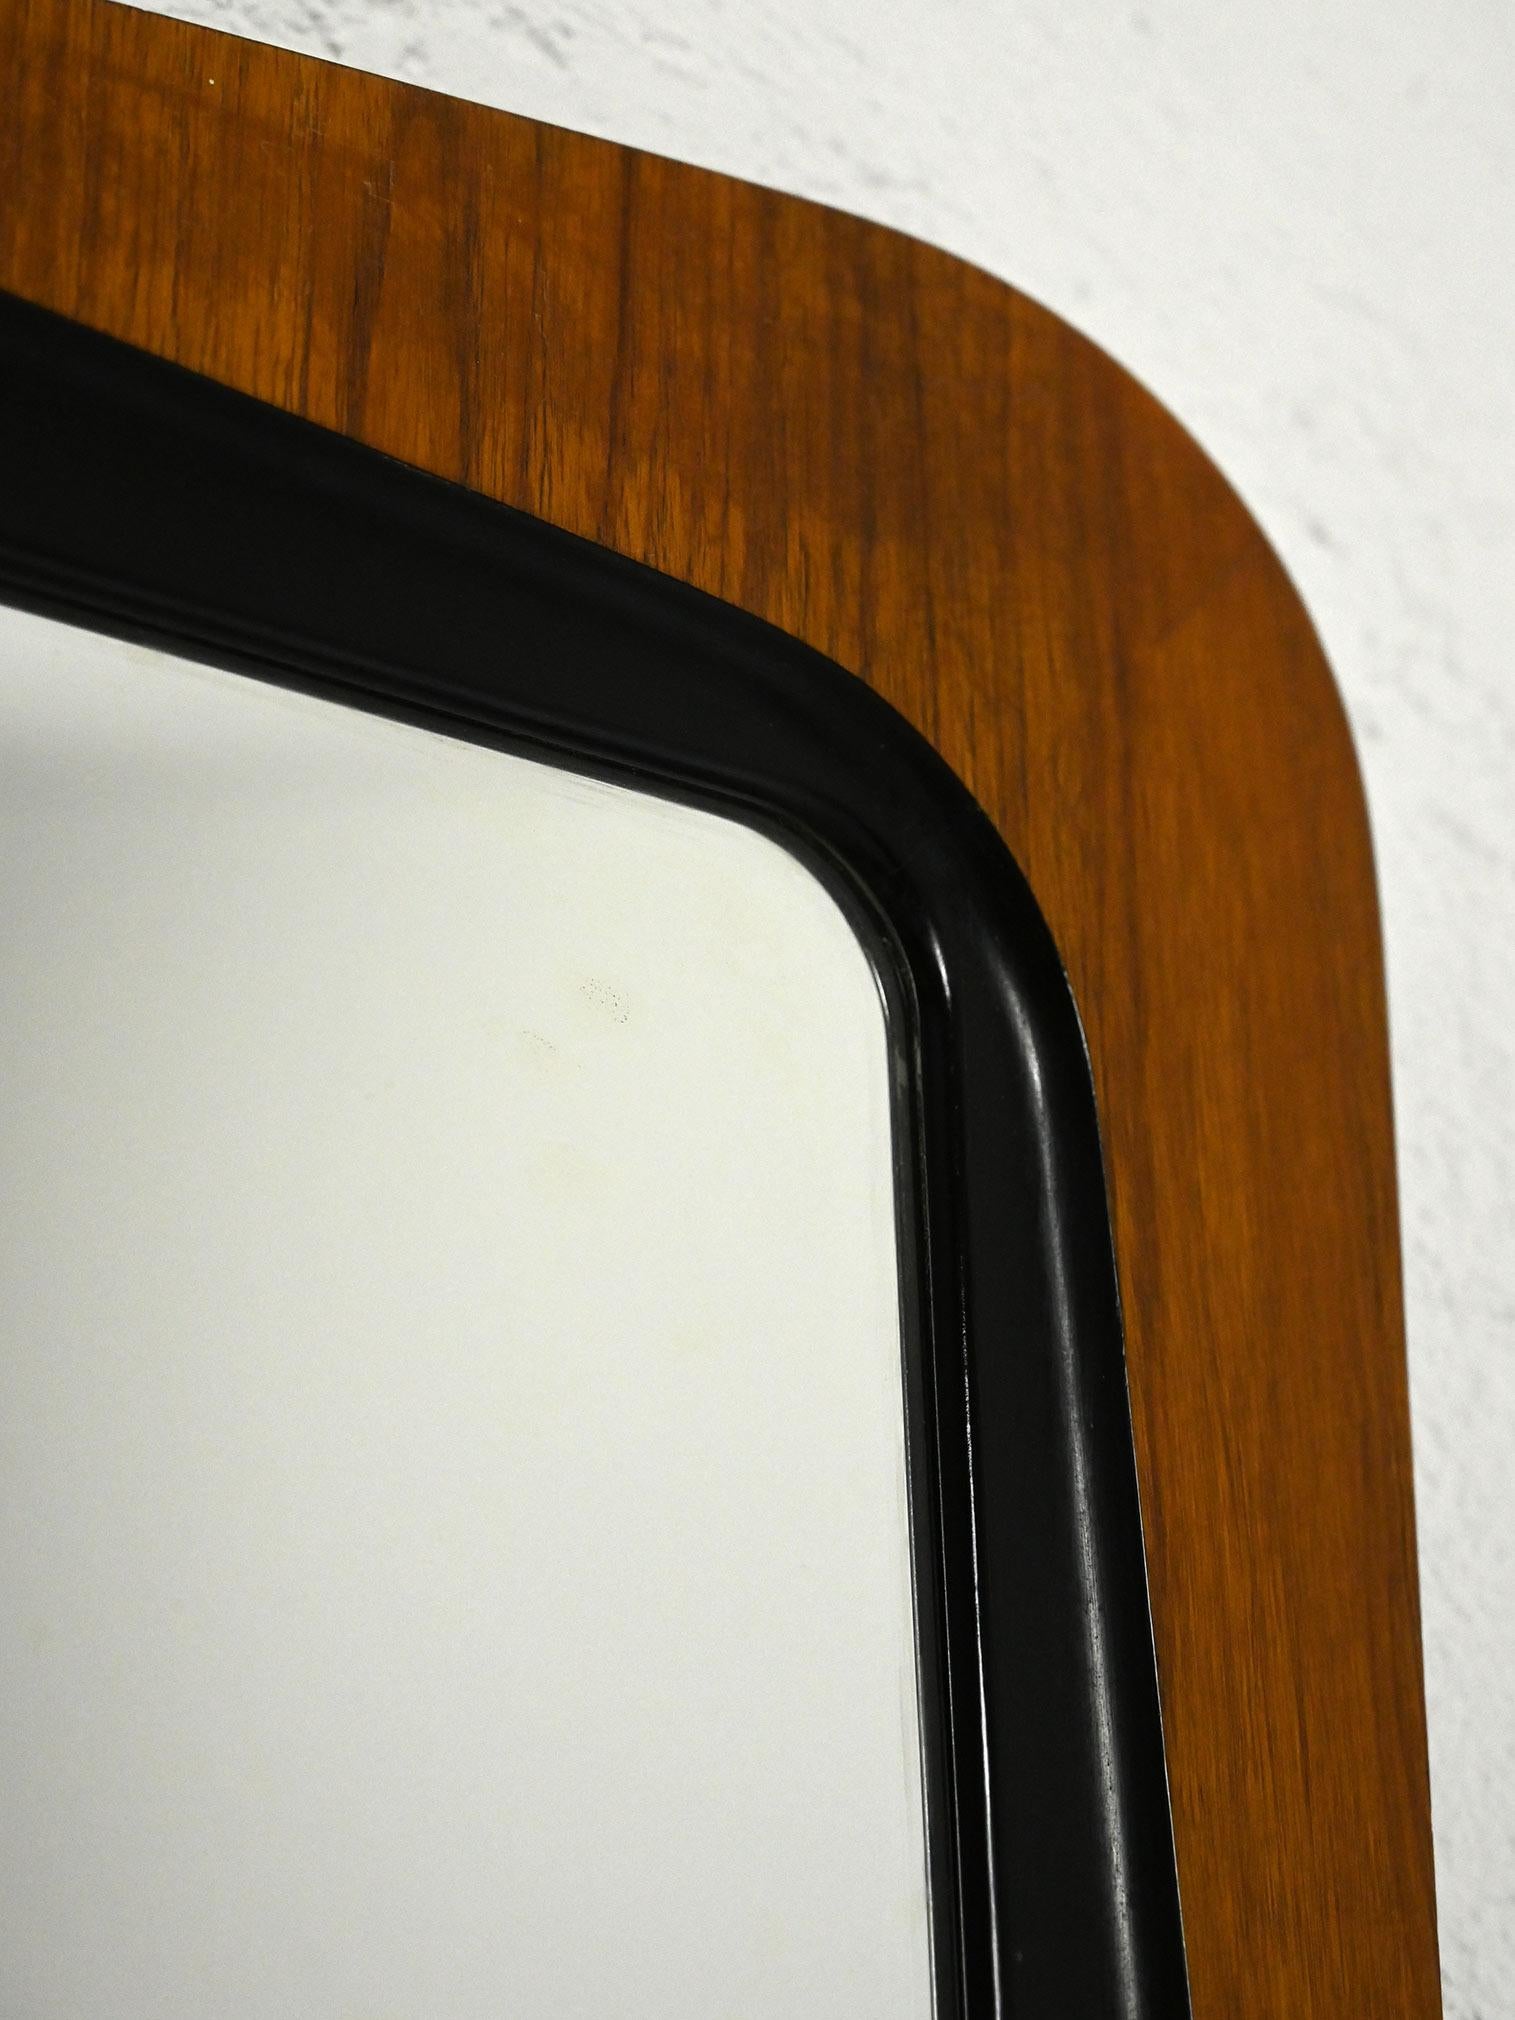 Skandinavischer Vintage-Spiegel aus den 1960er Jahren.

Skandinavischer Vintage-Spiegel mit Teakholzrahmen, der durch seine leicht vorspringende Form und seine geringe Größe auffällt. Das markante Detail des Rahmens wird durch eine schwarze